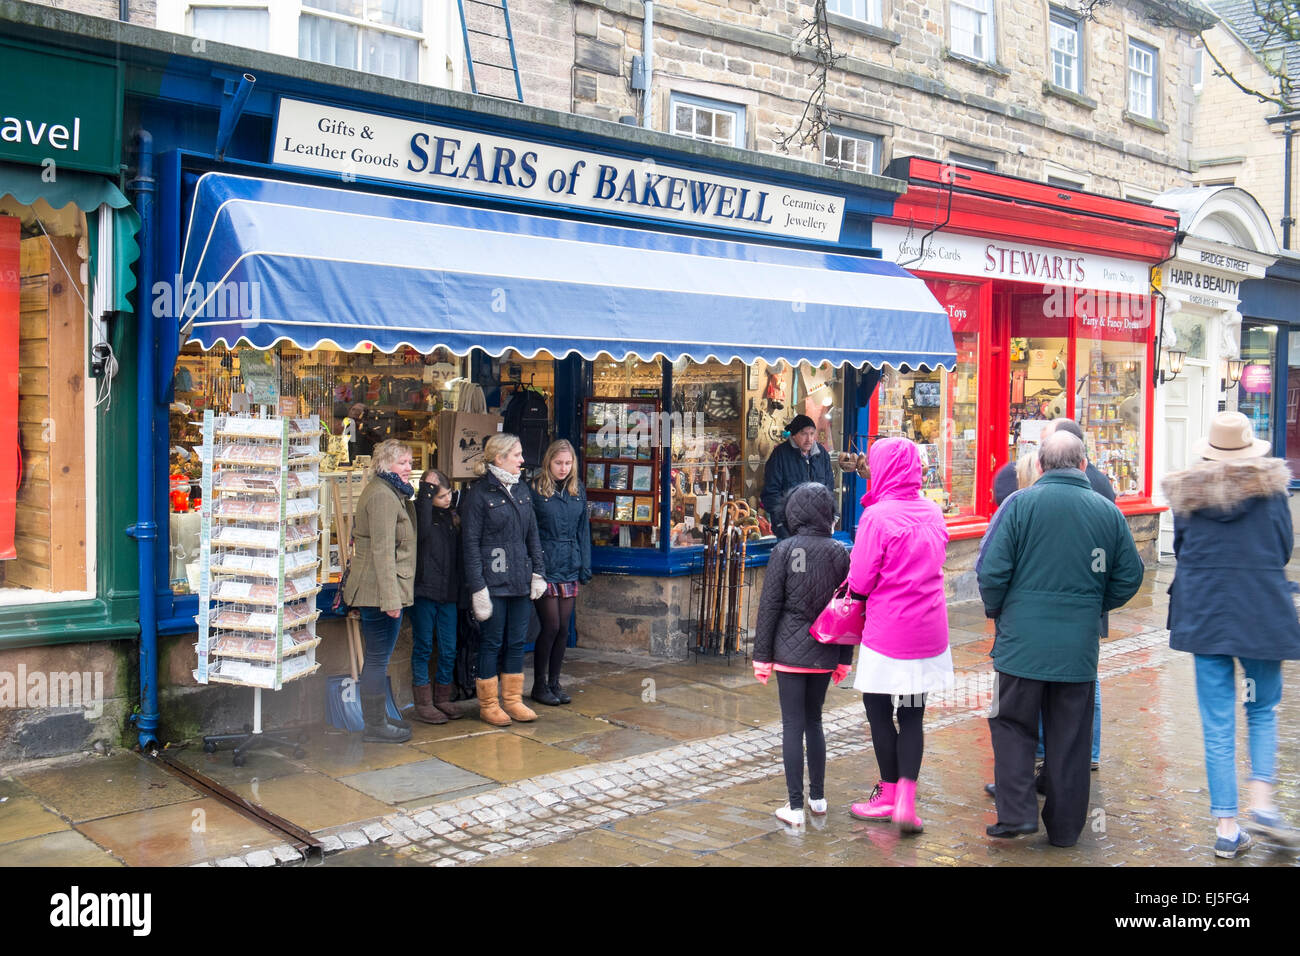 Sears of bakewell magasin de cadeaux à Bakewell, une ville populaire dans le Derbyshire, Angleterre Banque D'Images